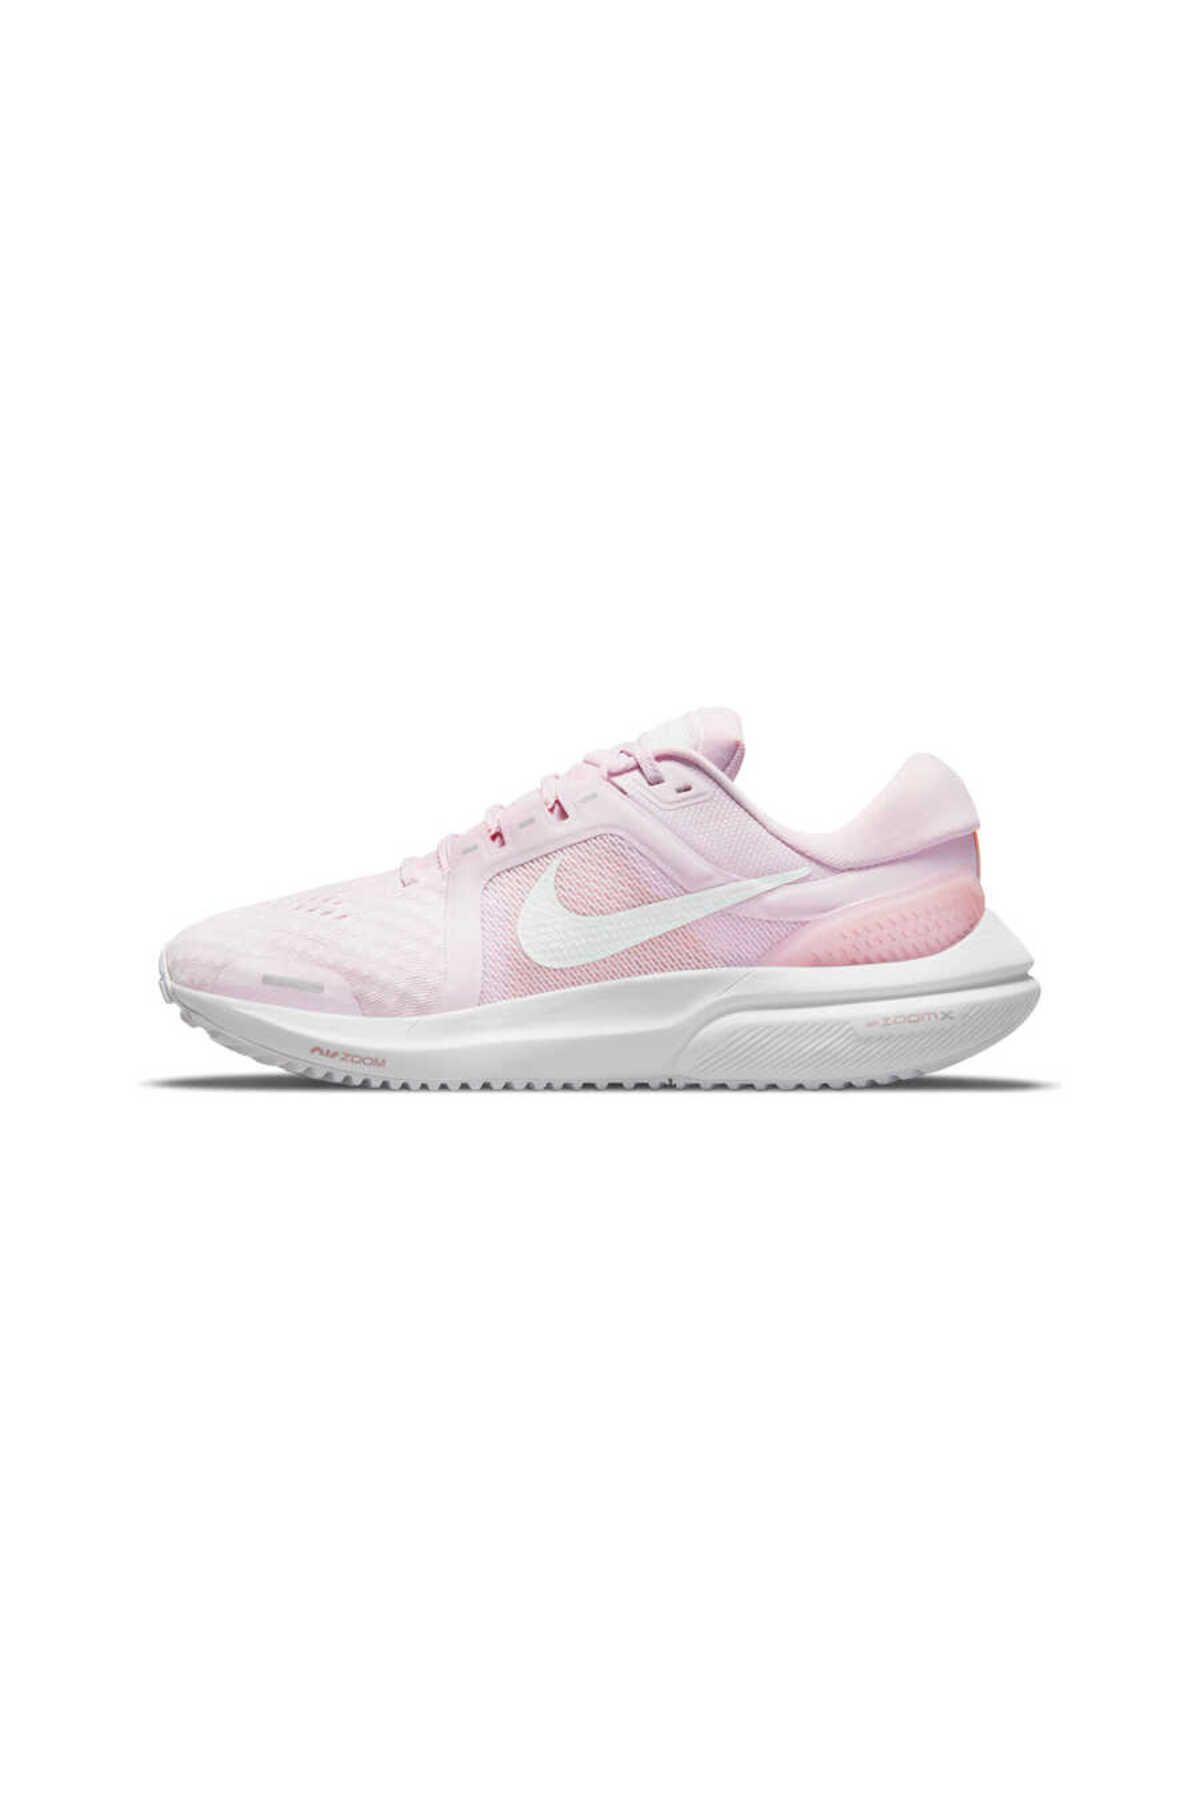 Nike Air Zoom Vomero 16 Kadın Koşu Ayakkabısı-da7698-600